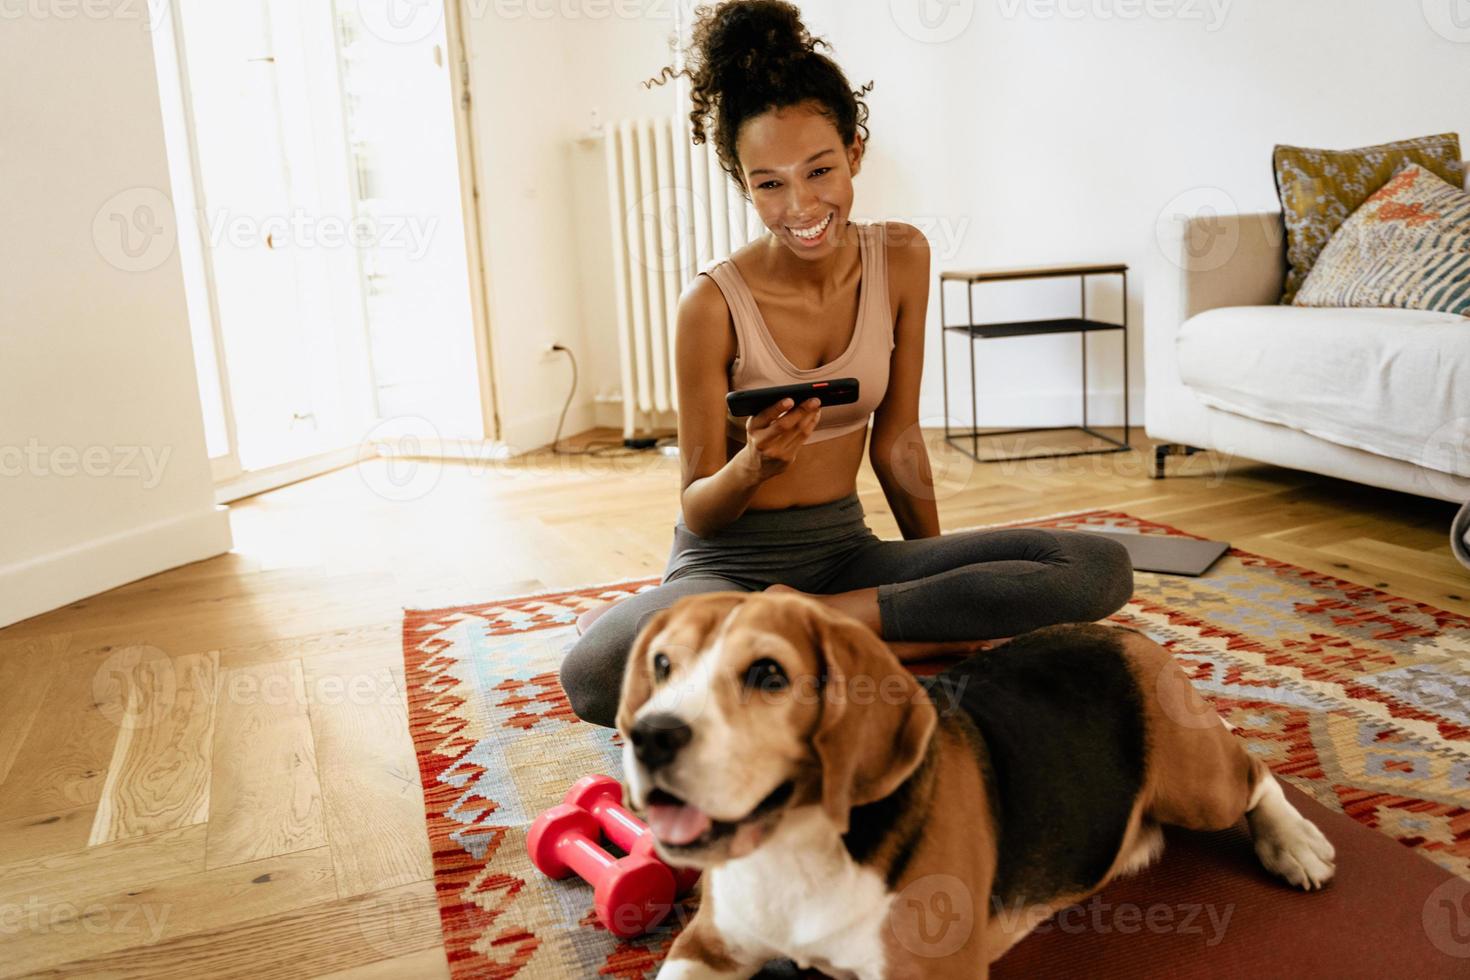 jeune femme noire utilisant un téléphone portable alors qu'elle était assise avec son chien sur un tapis photo